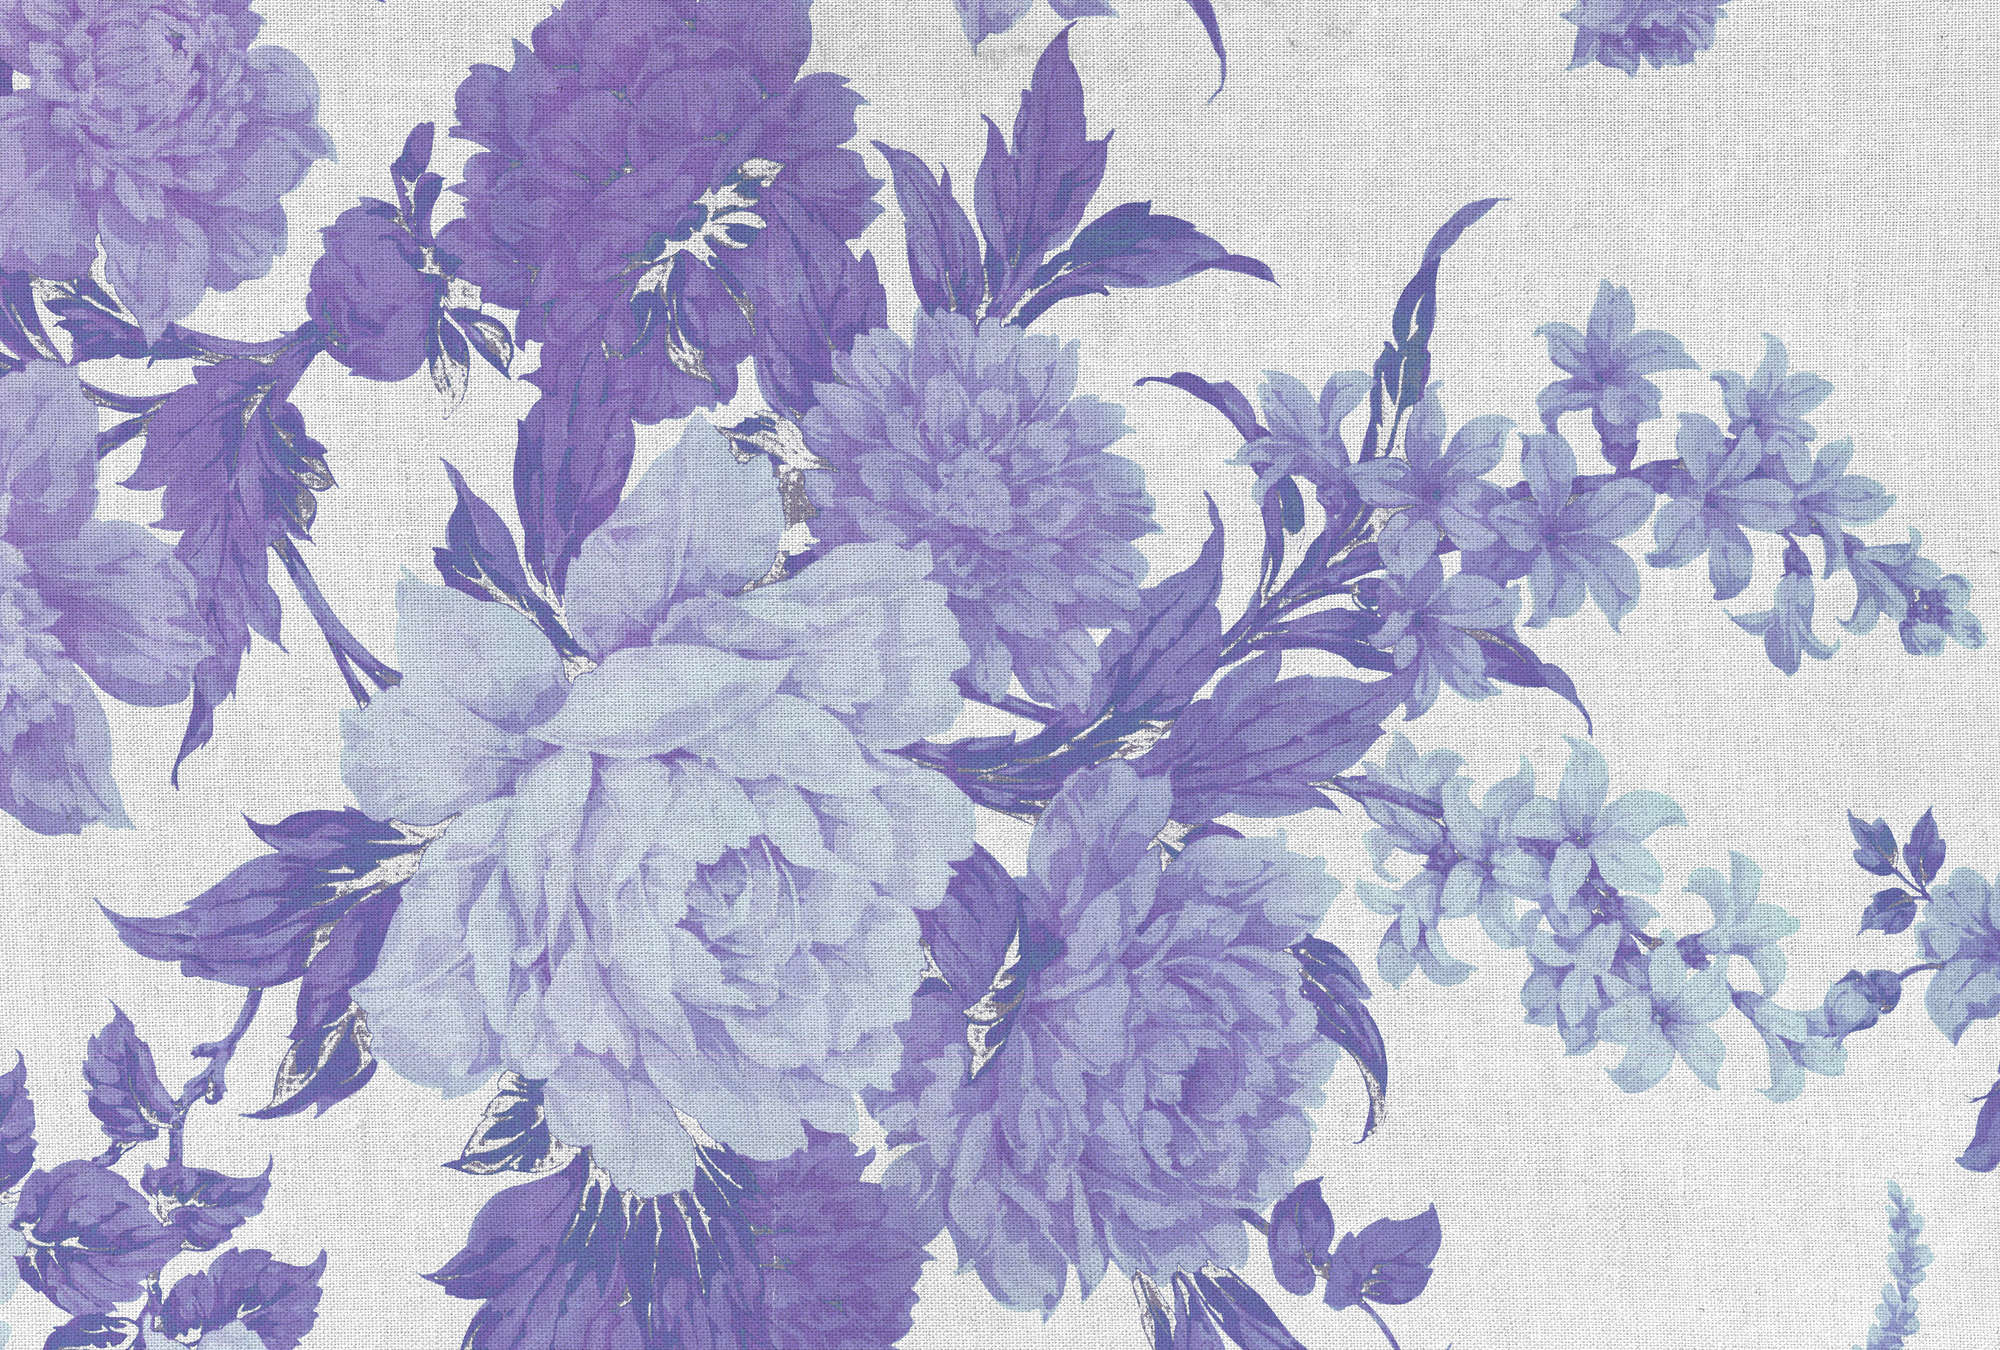             Rose, ornamenti floreali e carta da parati in tessuto - Viola, blu, bianco
        